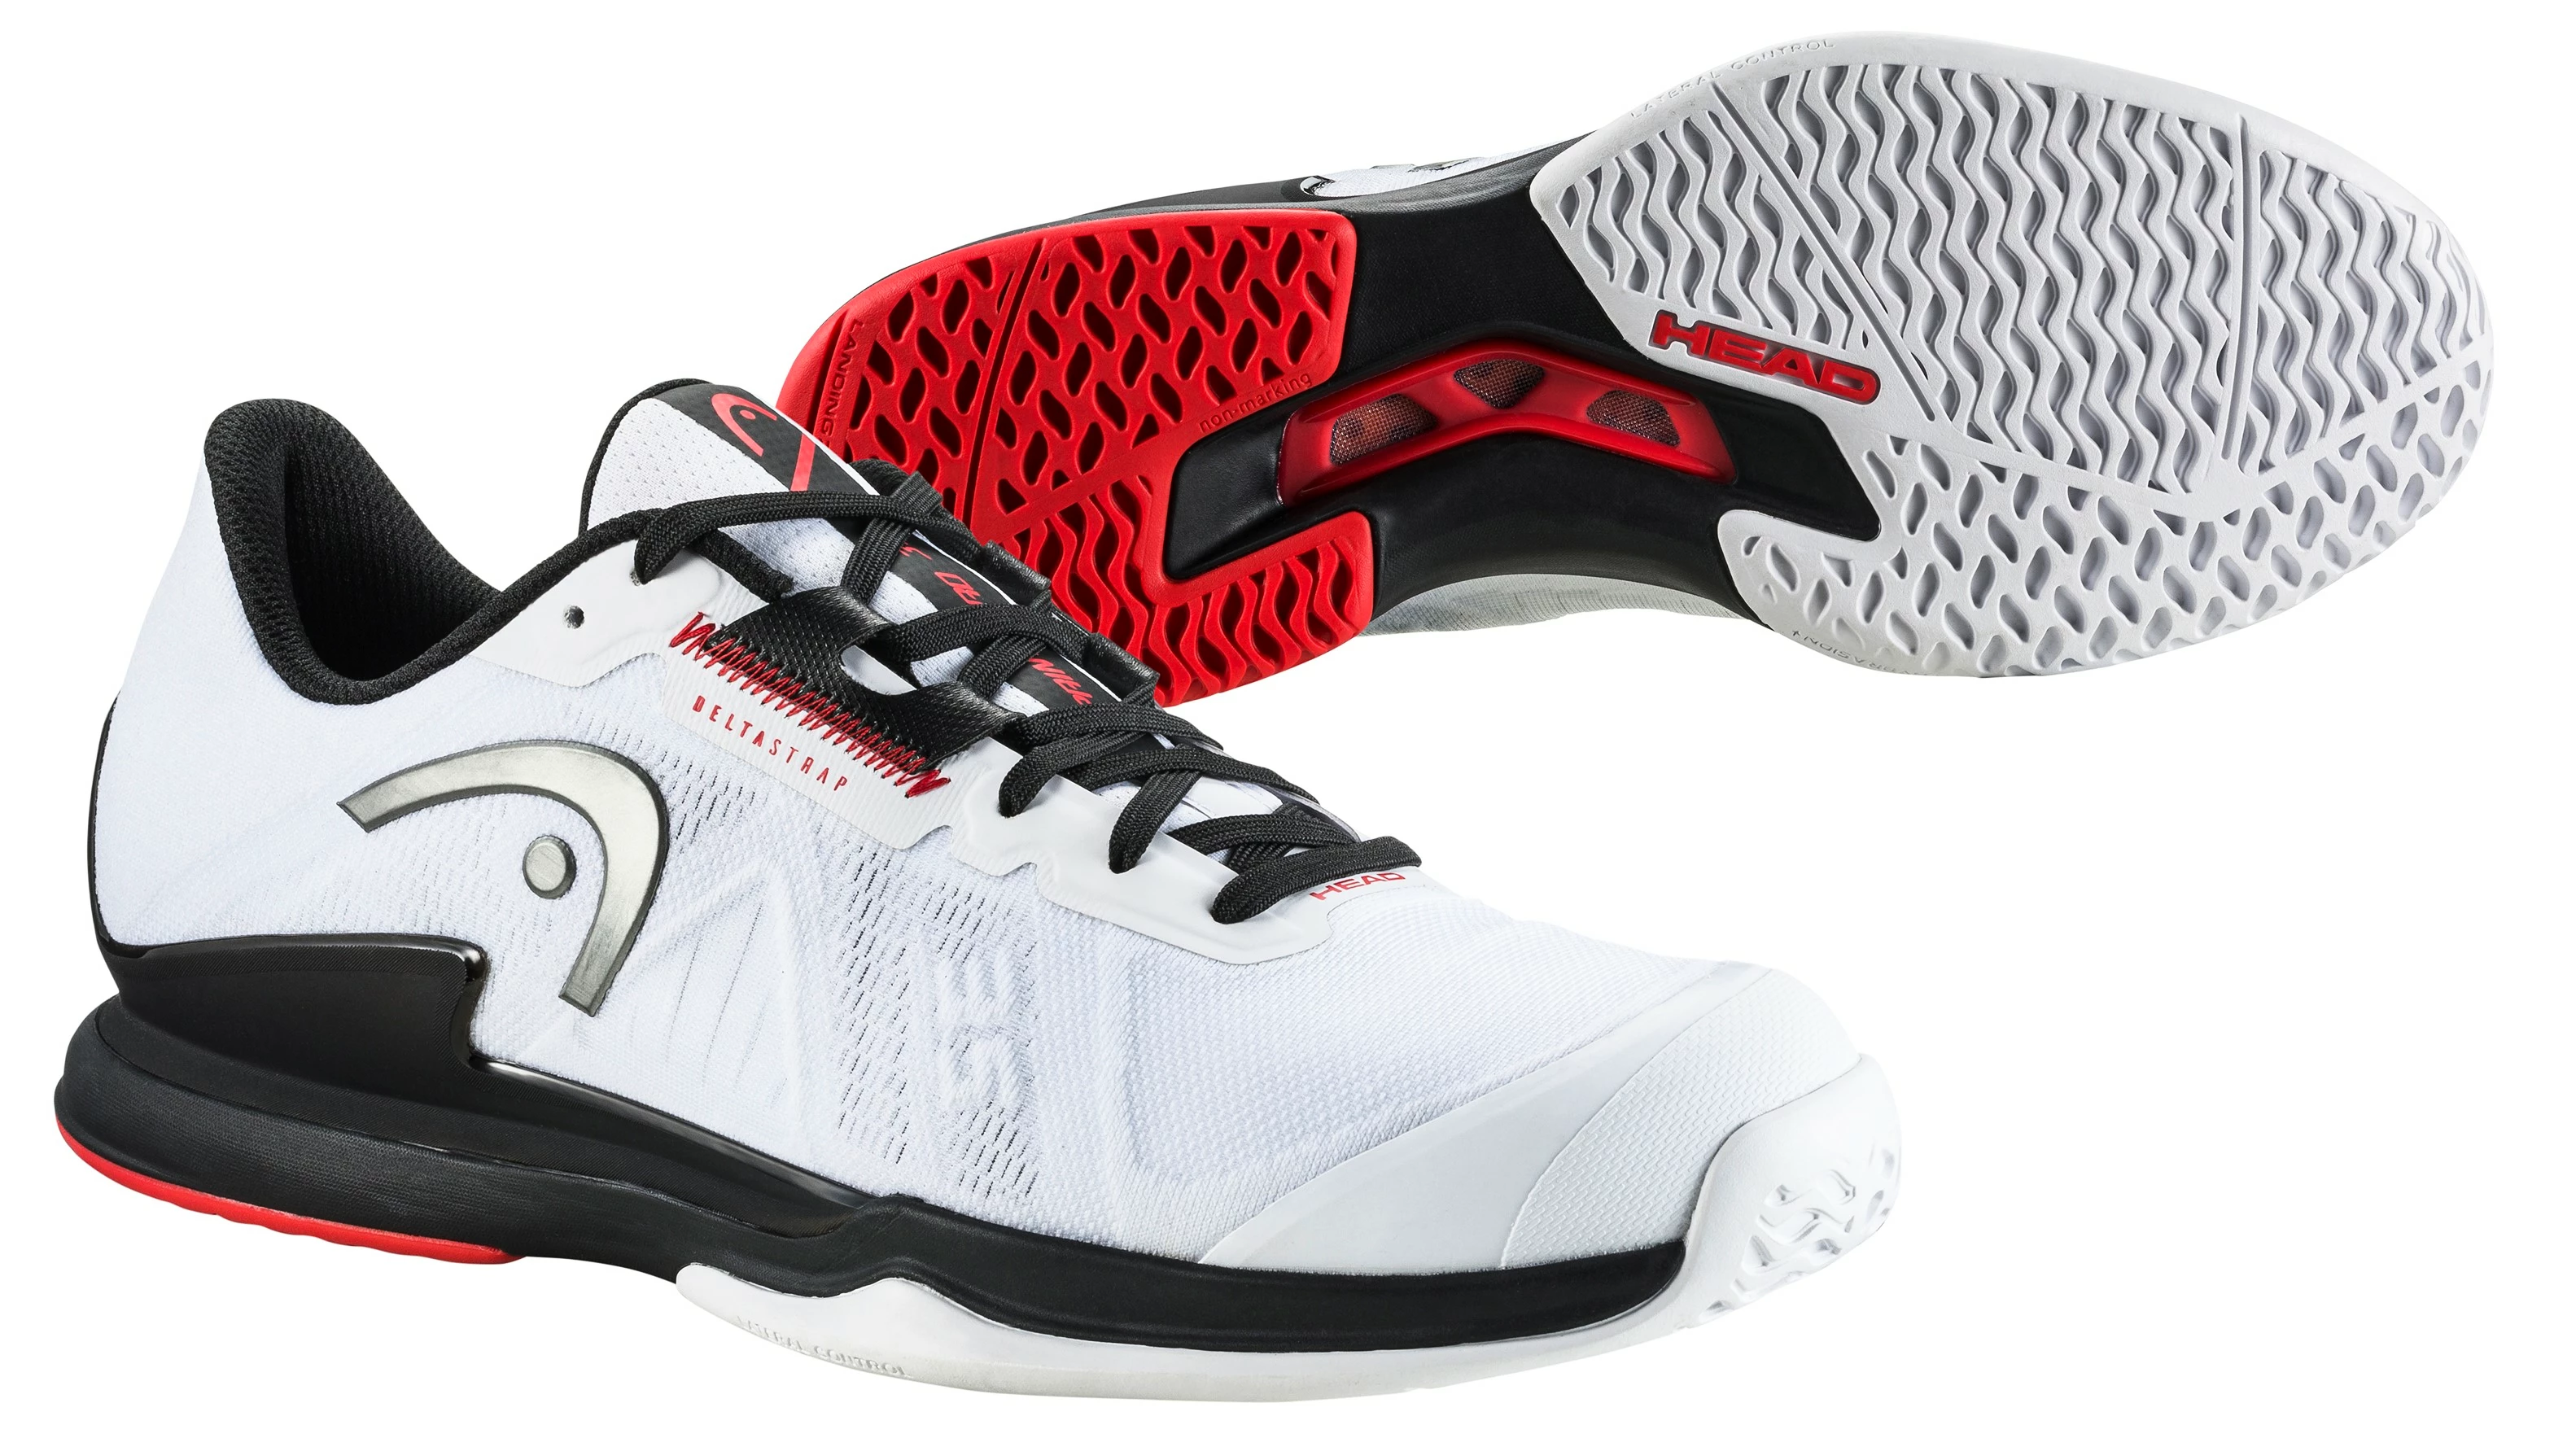 Head Sprint Pro 3.5 AC White/Black Men's Tennis Shoes EUR 46